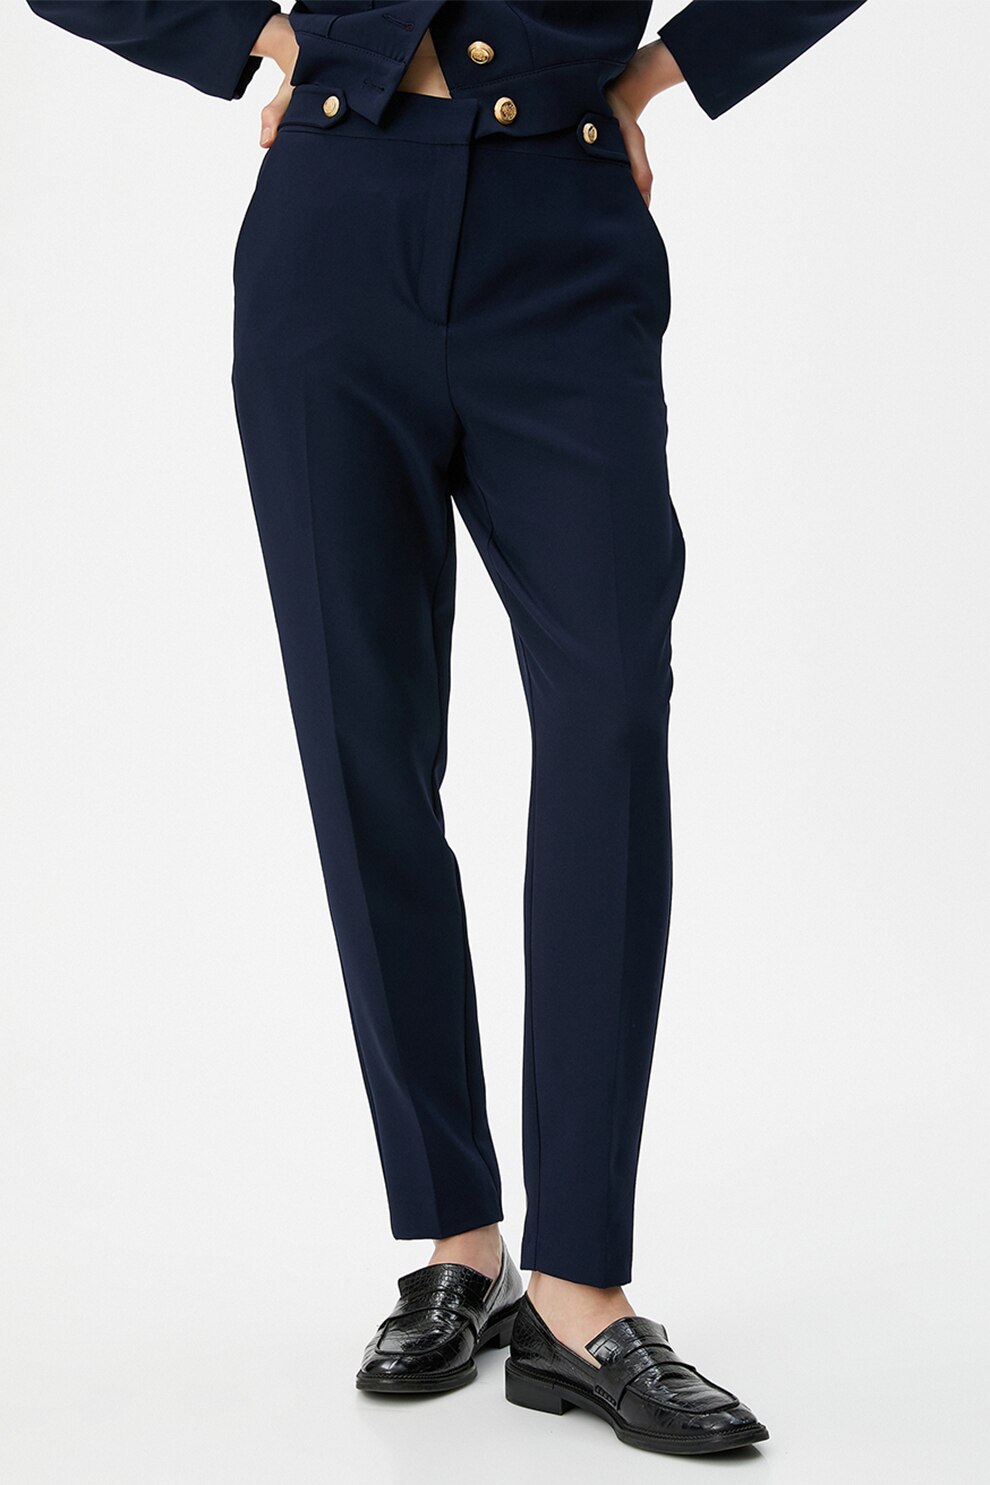 Pantaloni din stofa usor elastica bleumarin conici cu talie inalta